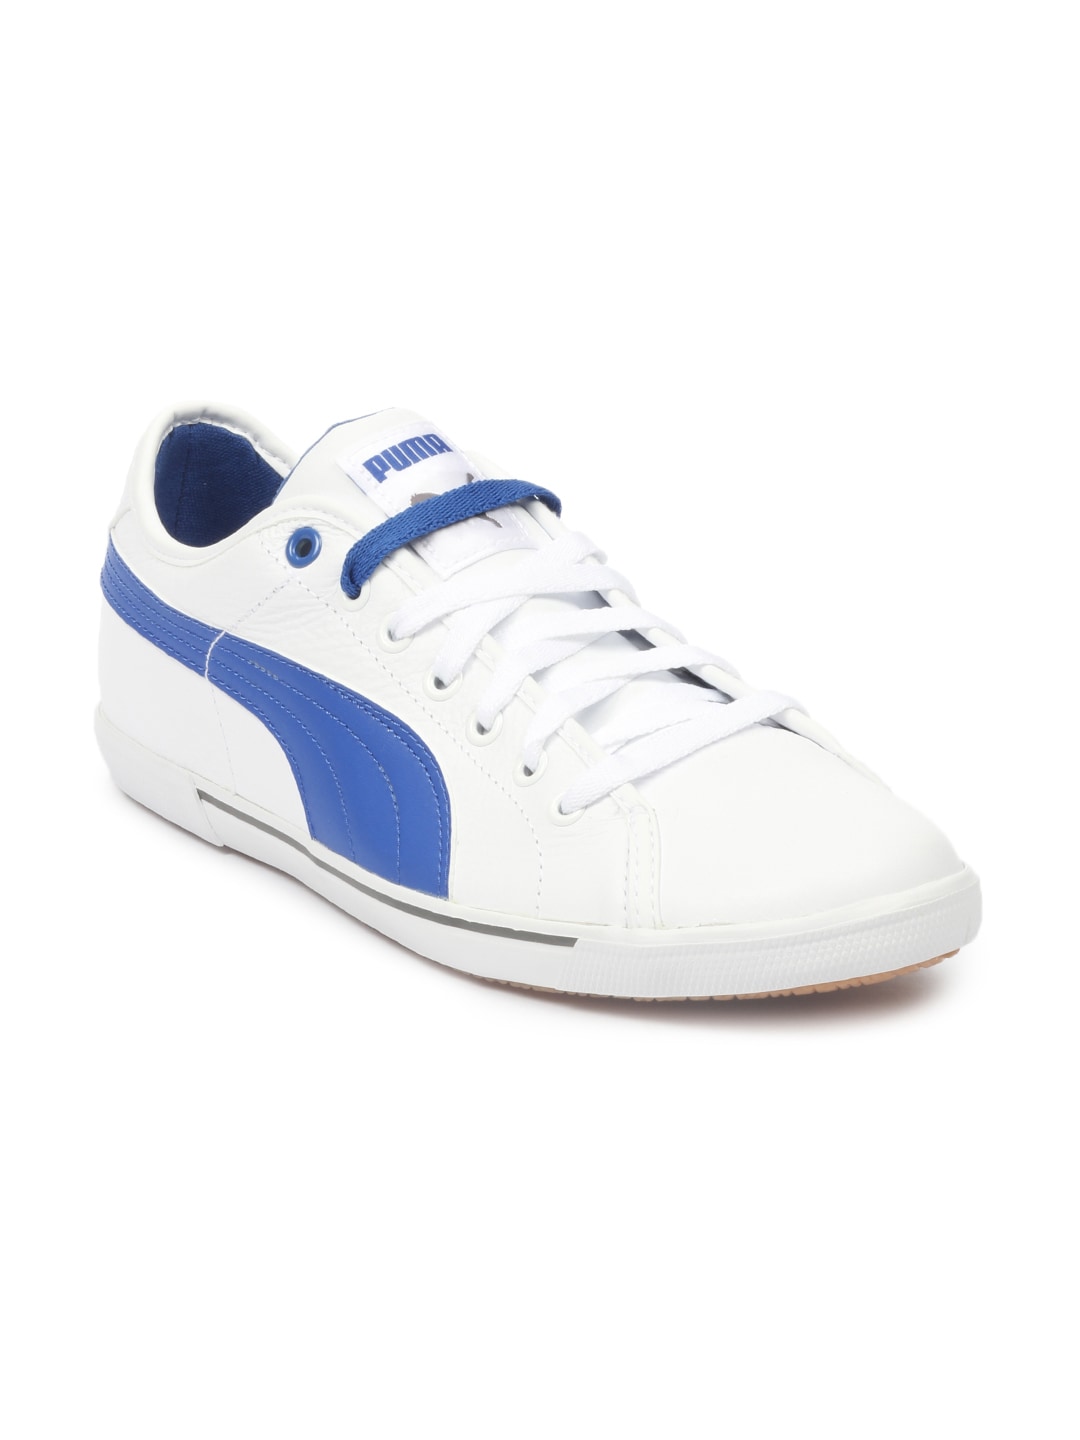 Puma Men White Benecio Shoes